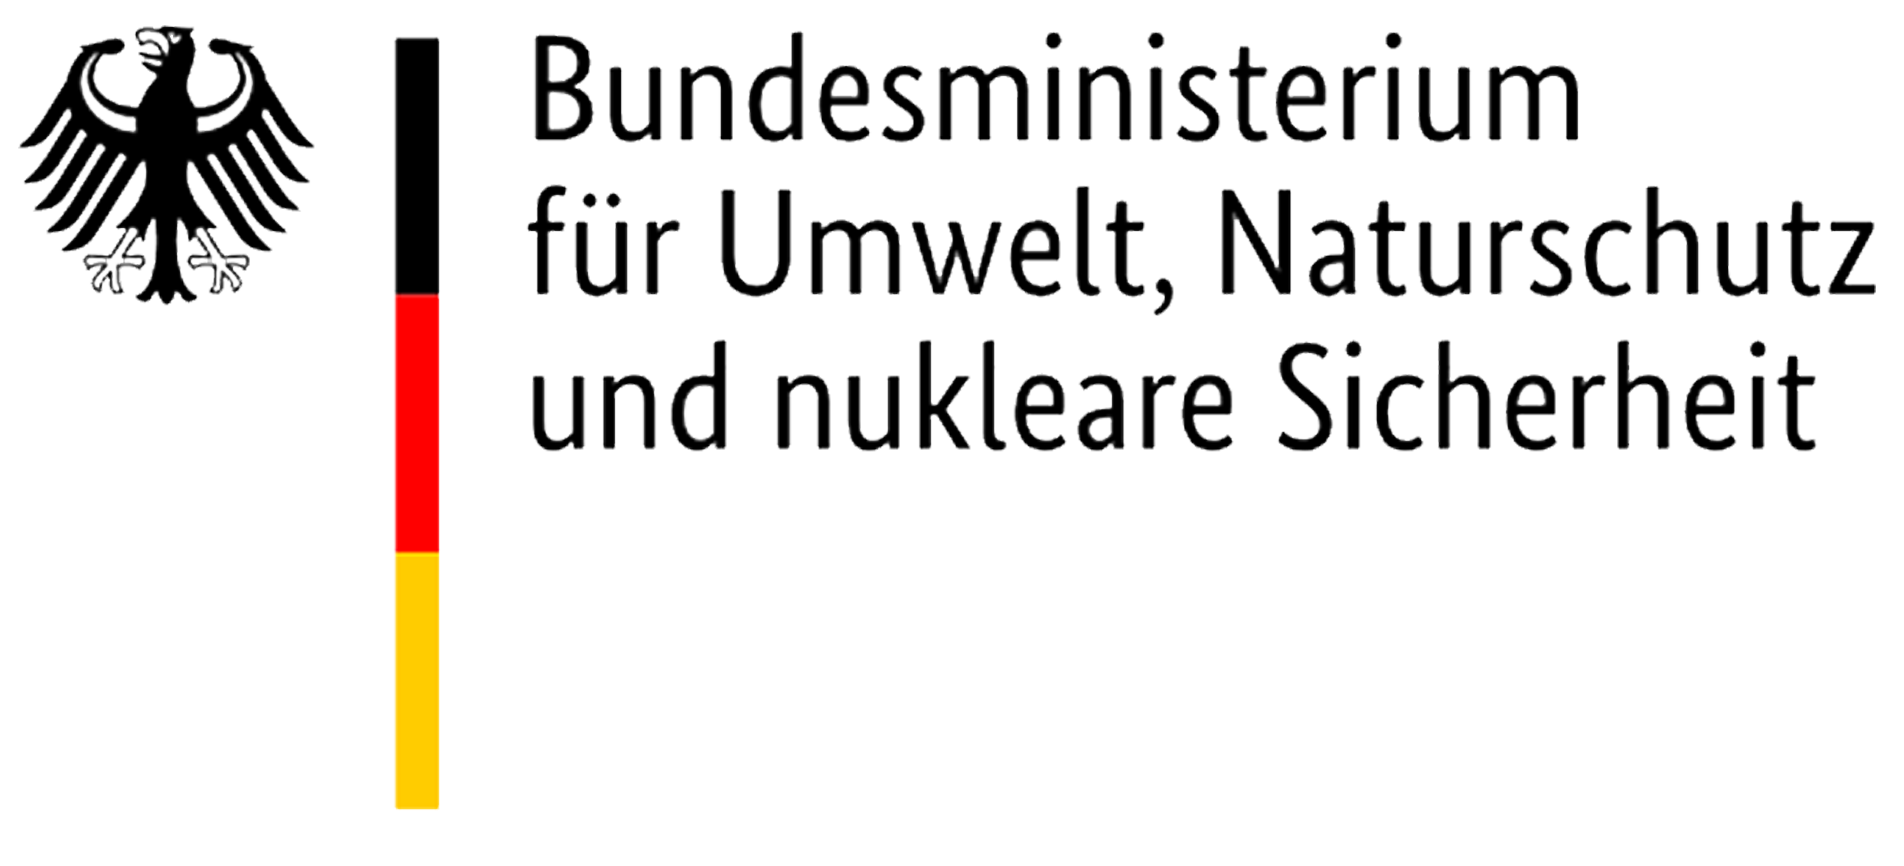 /assets/contentimages/Logo_Bundesministerium_fur_Umwelt_Naturschutz_und_nukleare_Sicherheit.png